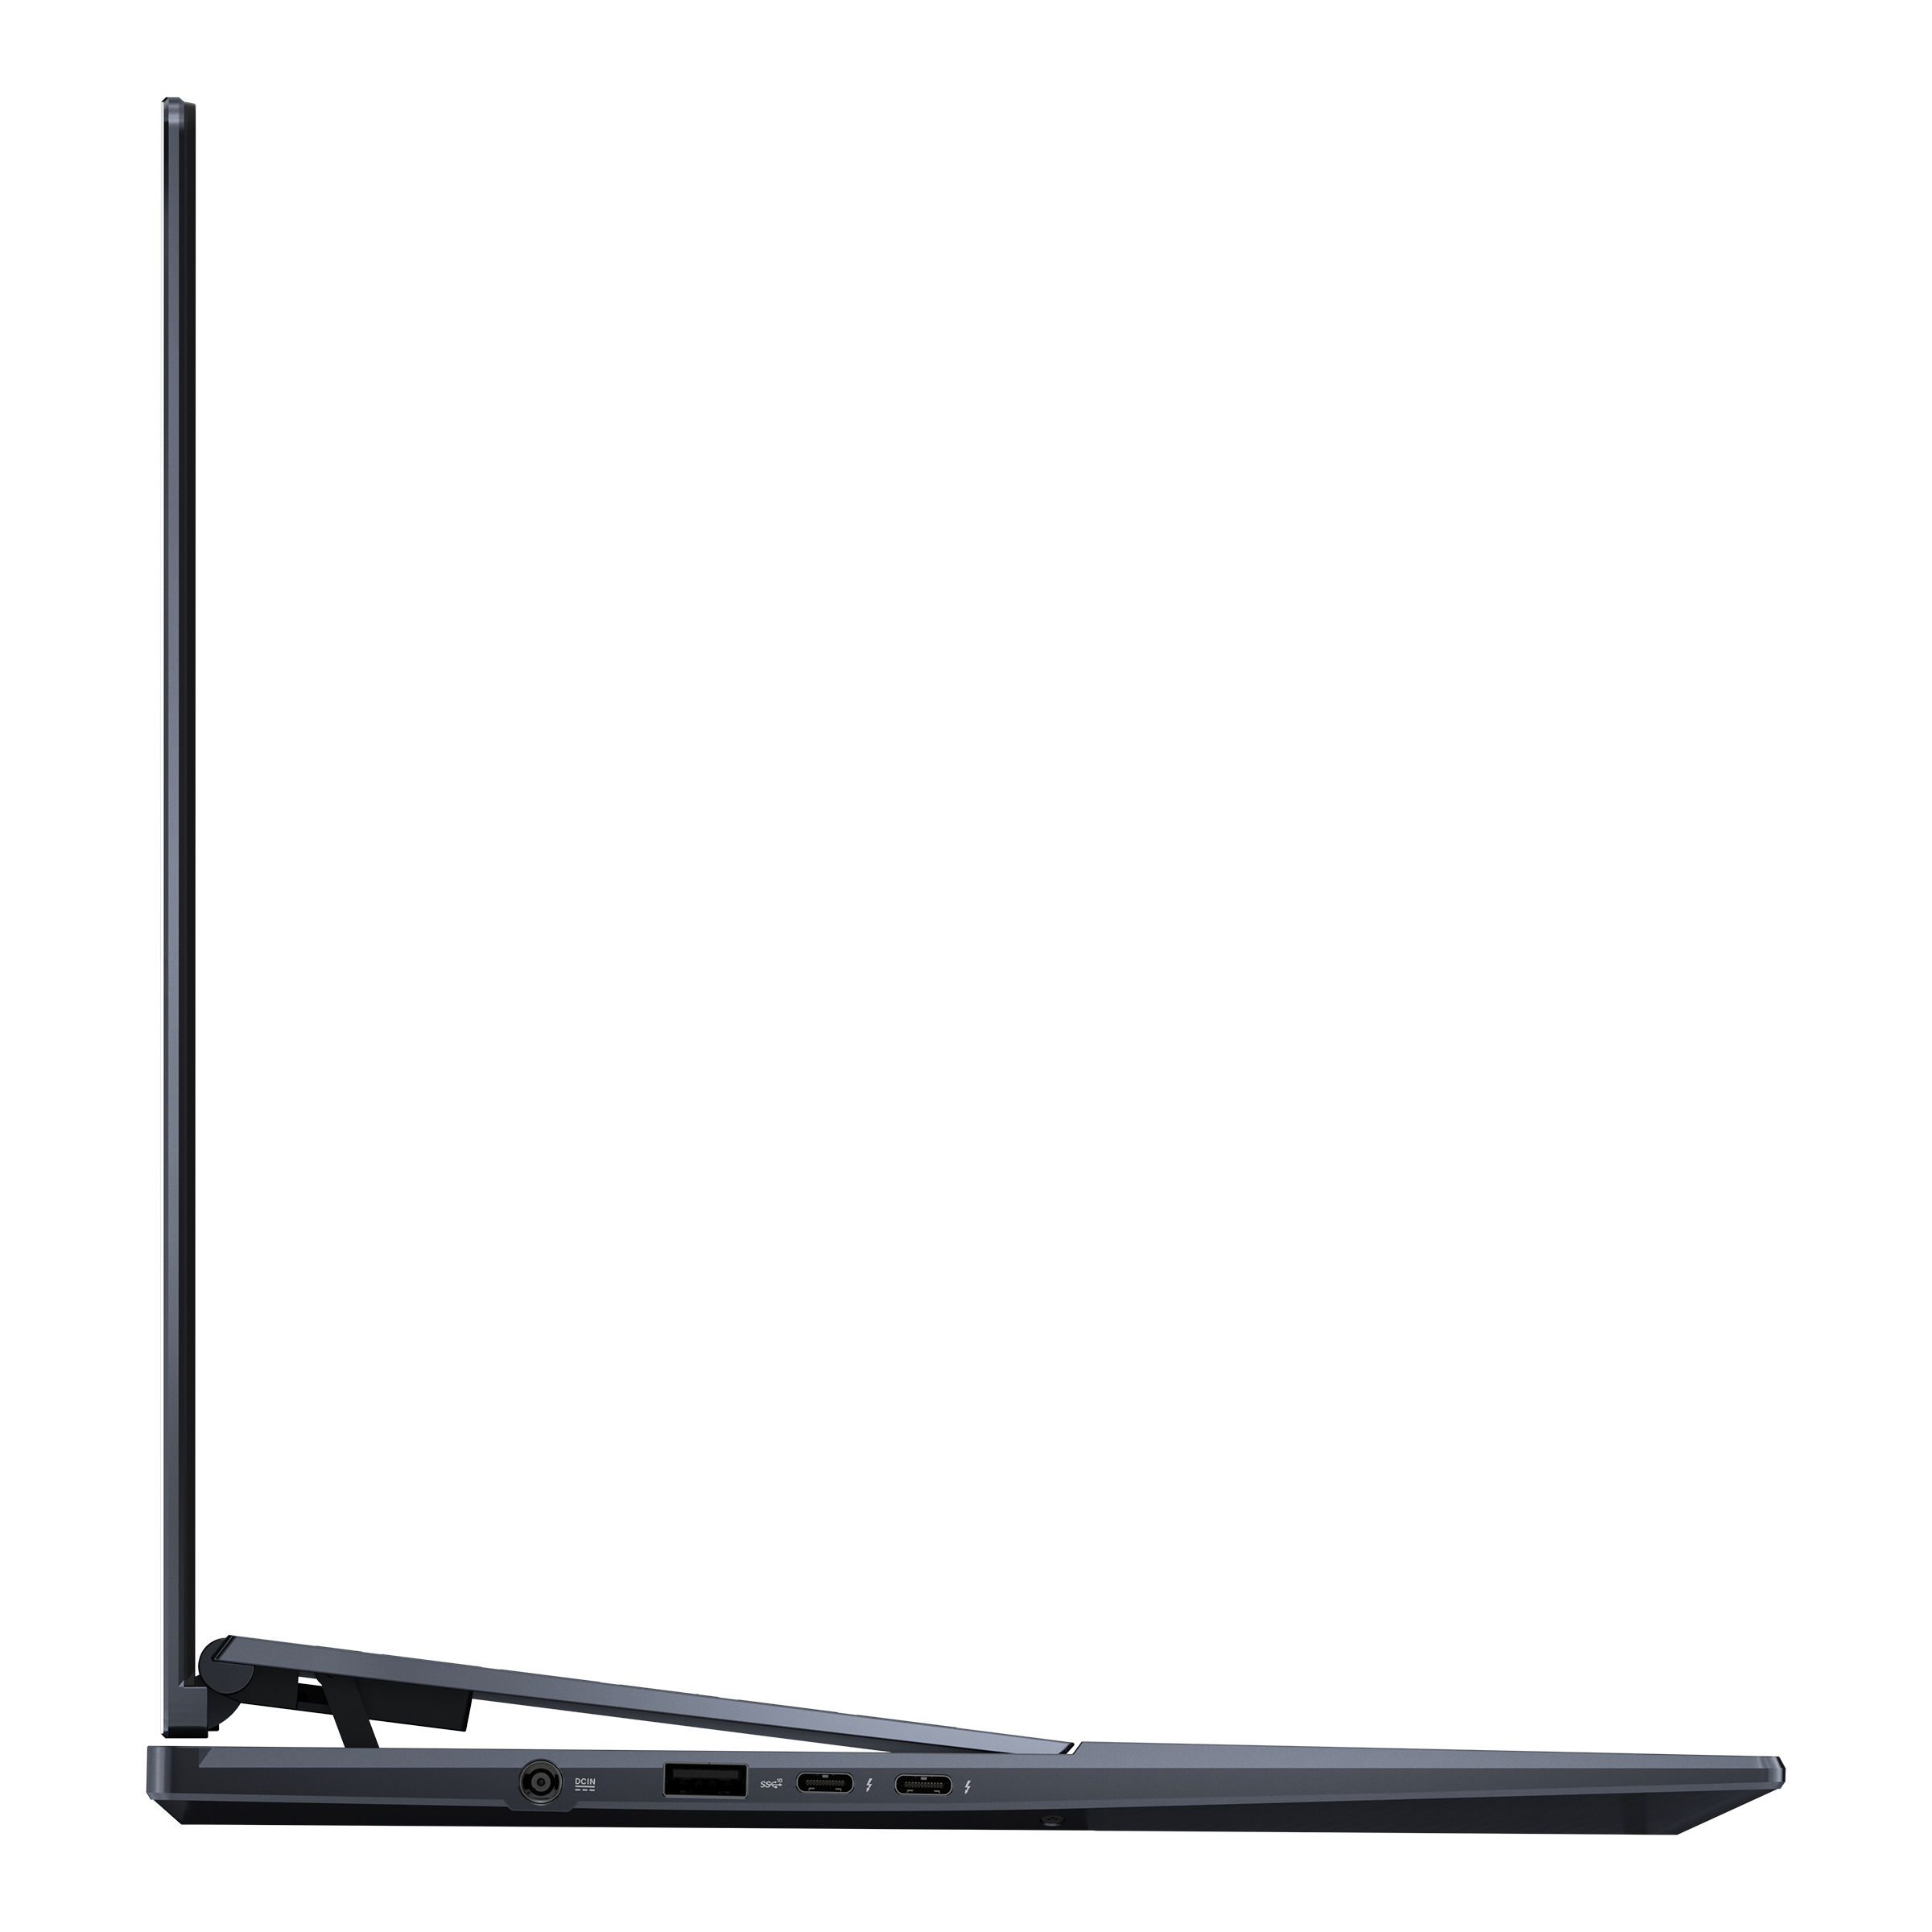 1248円 最愛 ASUS Zenbook Pro 16X OLED UX7602 2022年モデル 用 N40 マット 反射低減 タイプ 液晶 保護 フィルム エイスース ゼンブック プロ オーレッド